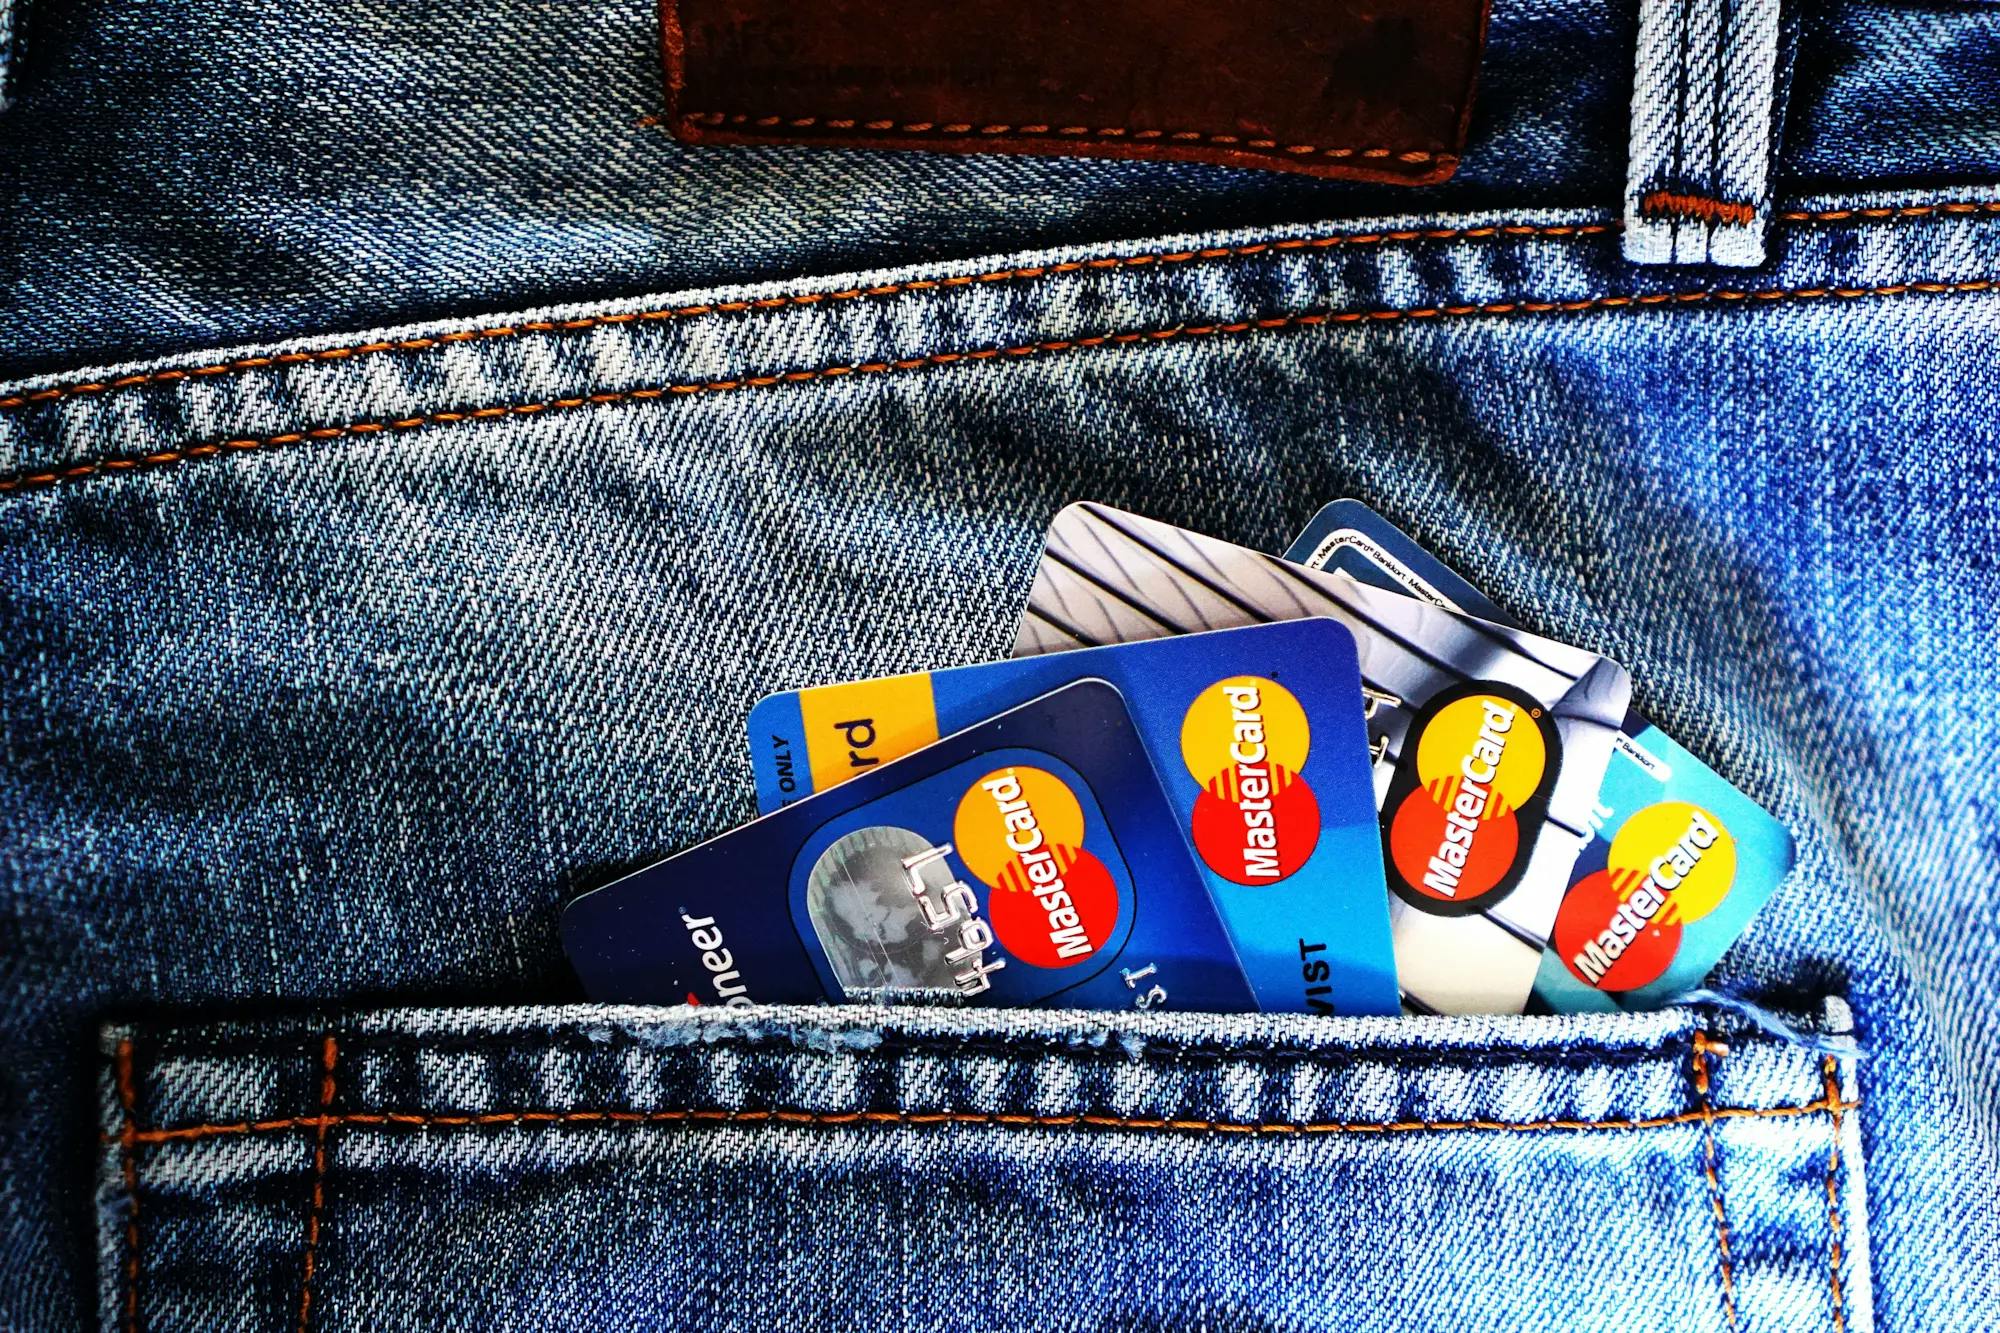 Aprende más sobre las tarjetas de crédito